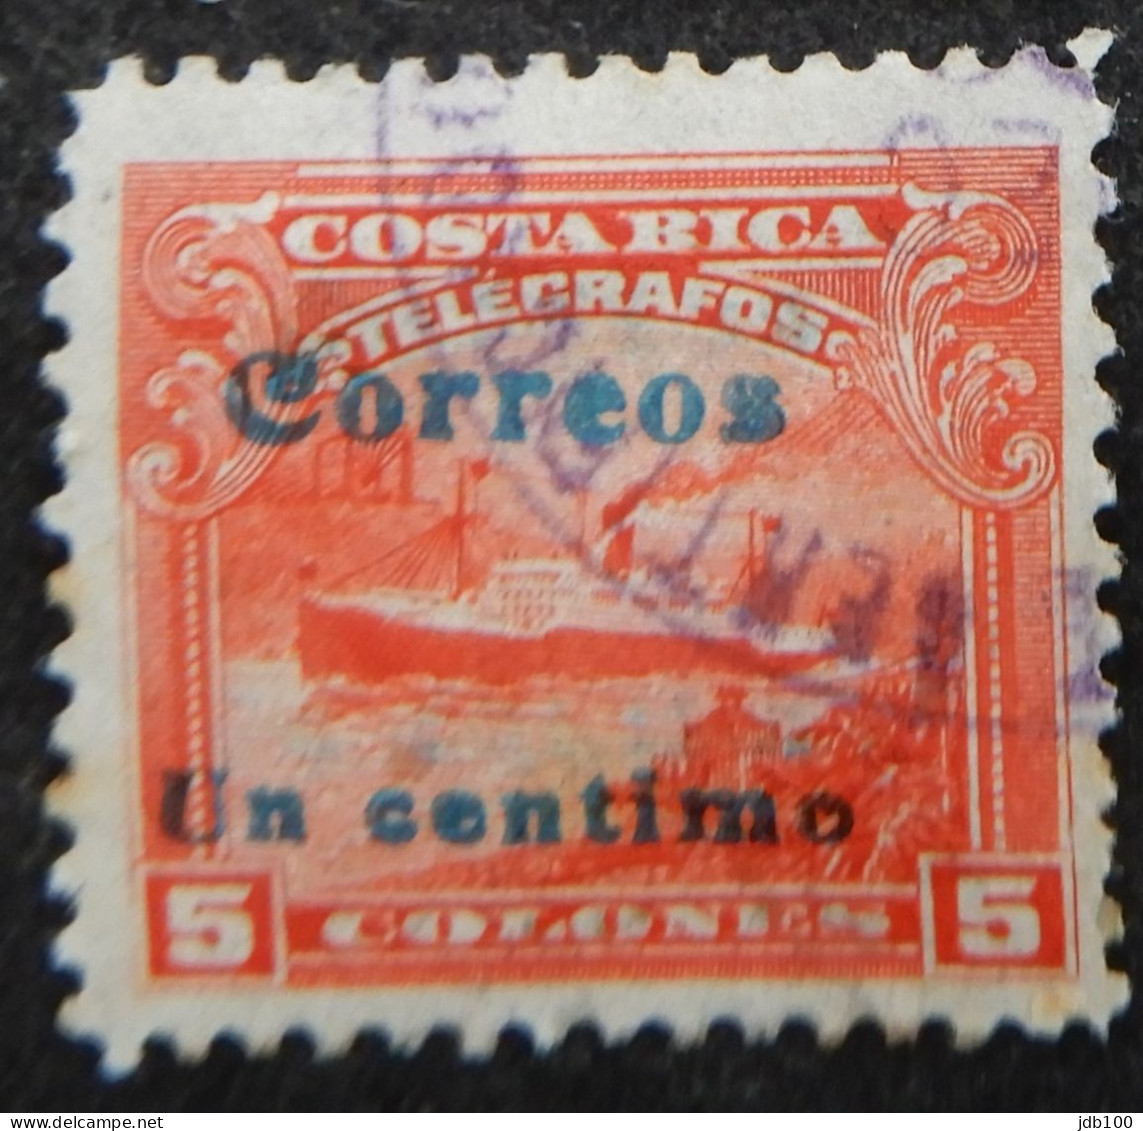 Costa Rica 1911 (5c) Telegrafos Surcharded Un Centimo - Costa Rica